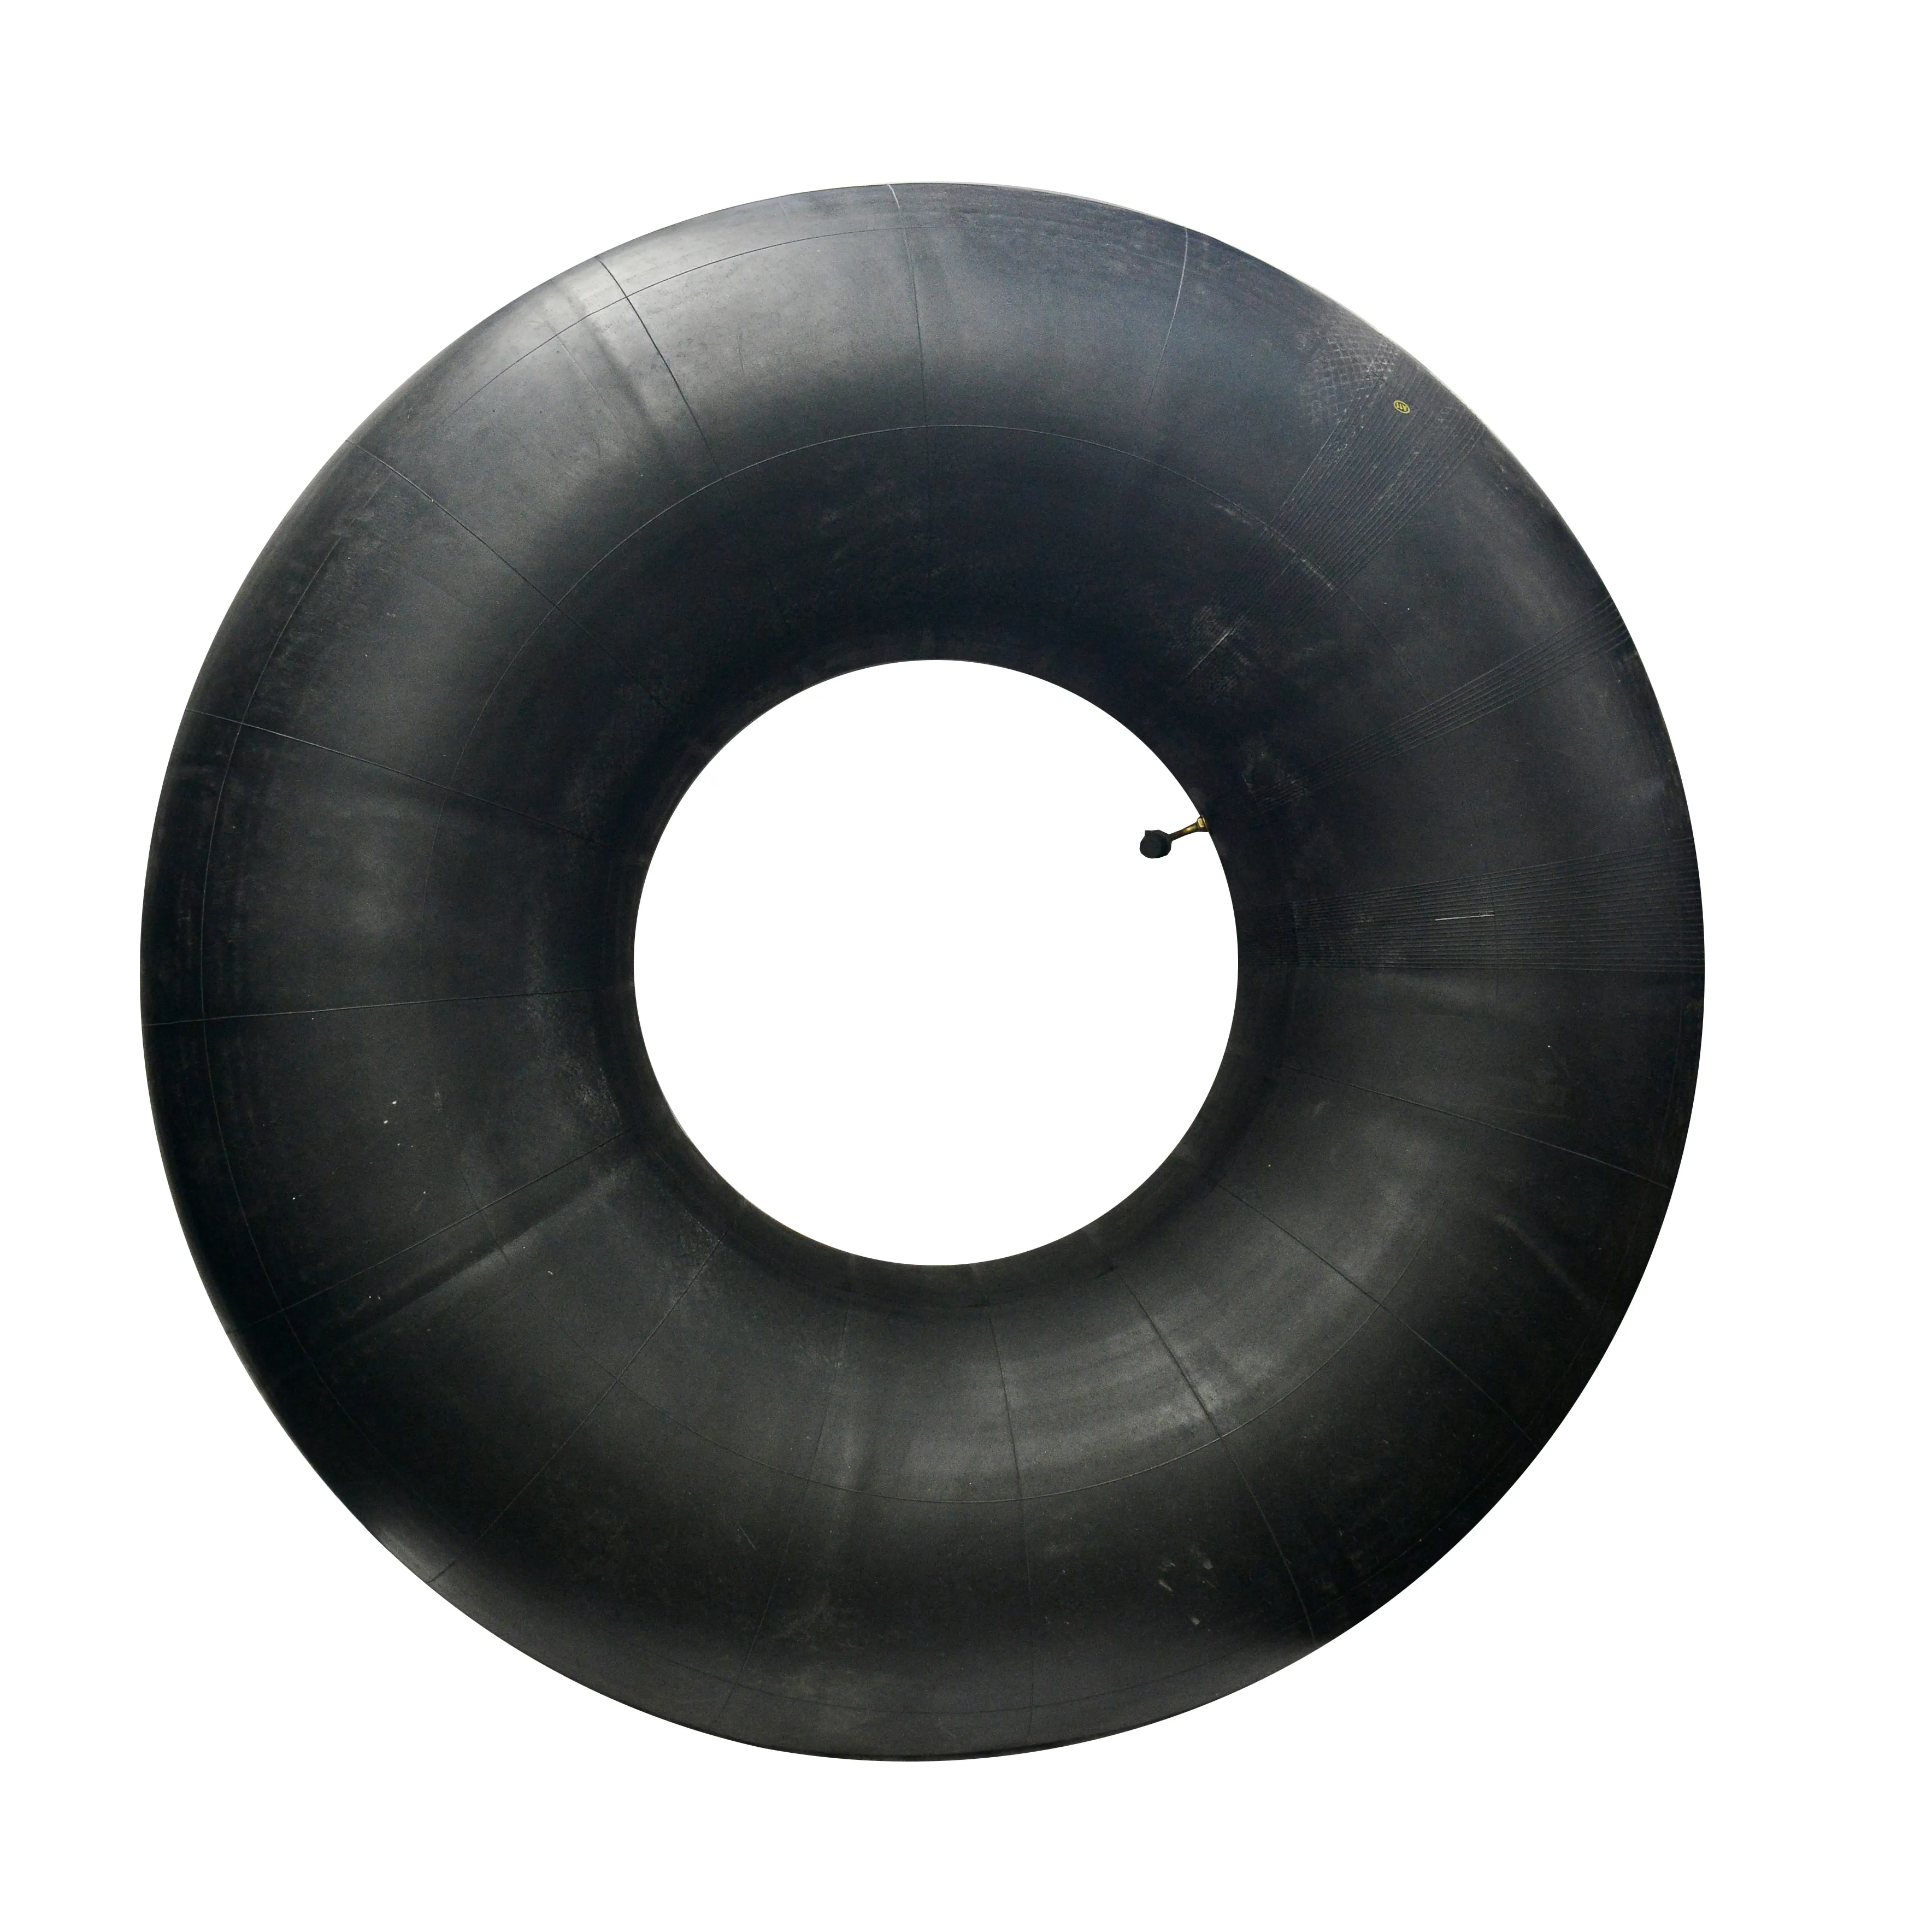 Tubo interno per pneumatici in gomma butilica di dimensioni standard a buon mercato 26.5-25 per pneumatici OTR o pneumatici di ingegneria